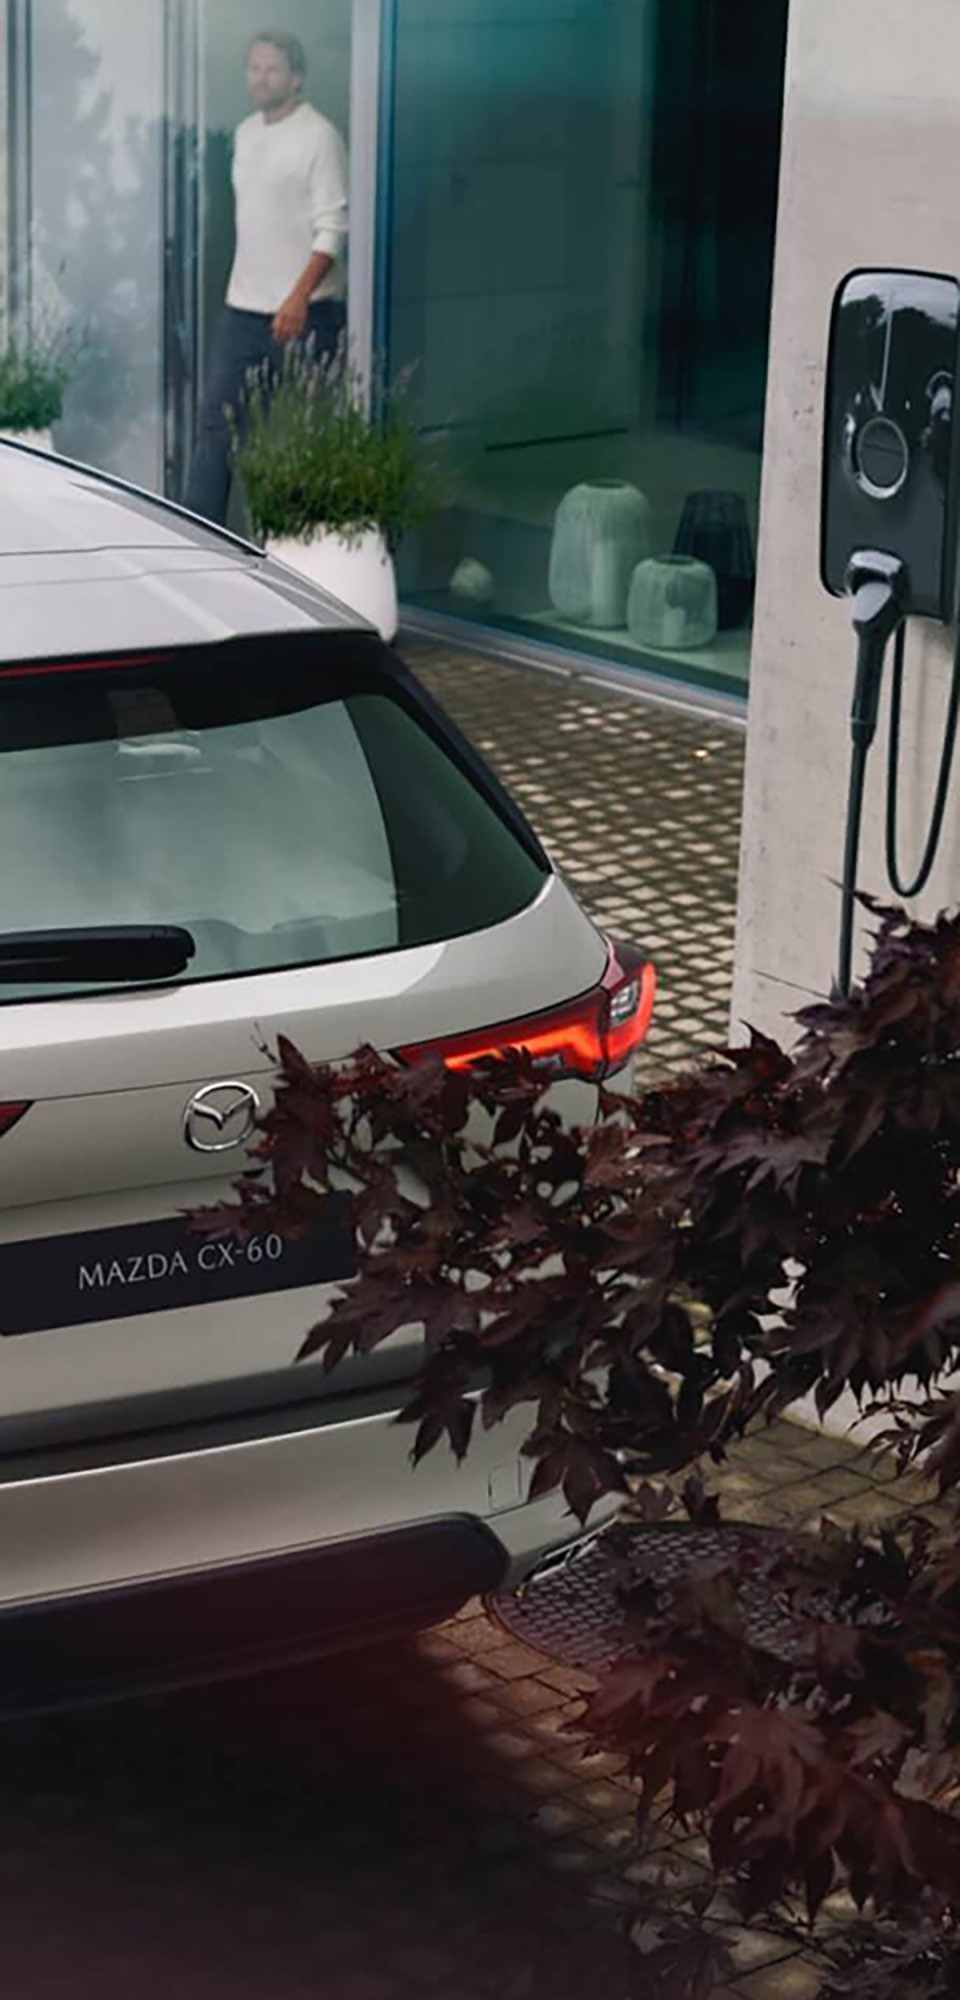 Jaunais uzlādējamais apvidus hibrīdautomobilis Mazda CX-60 novietots pie mājas uzlādes ierīces.